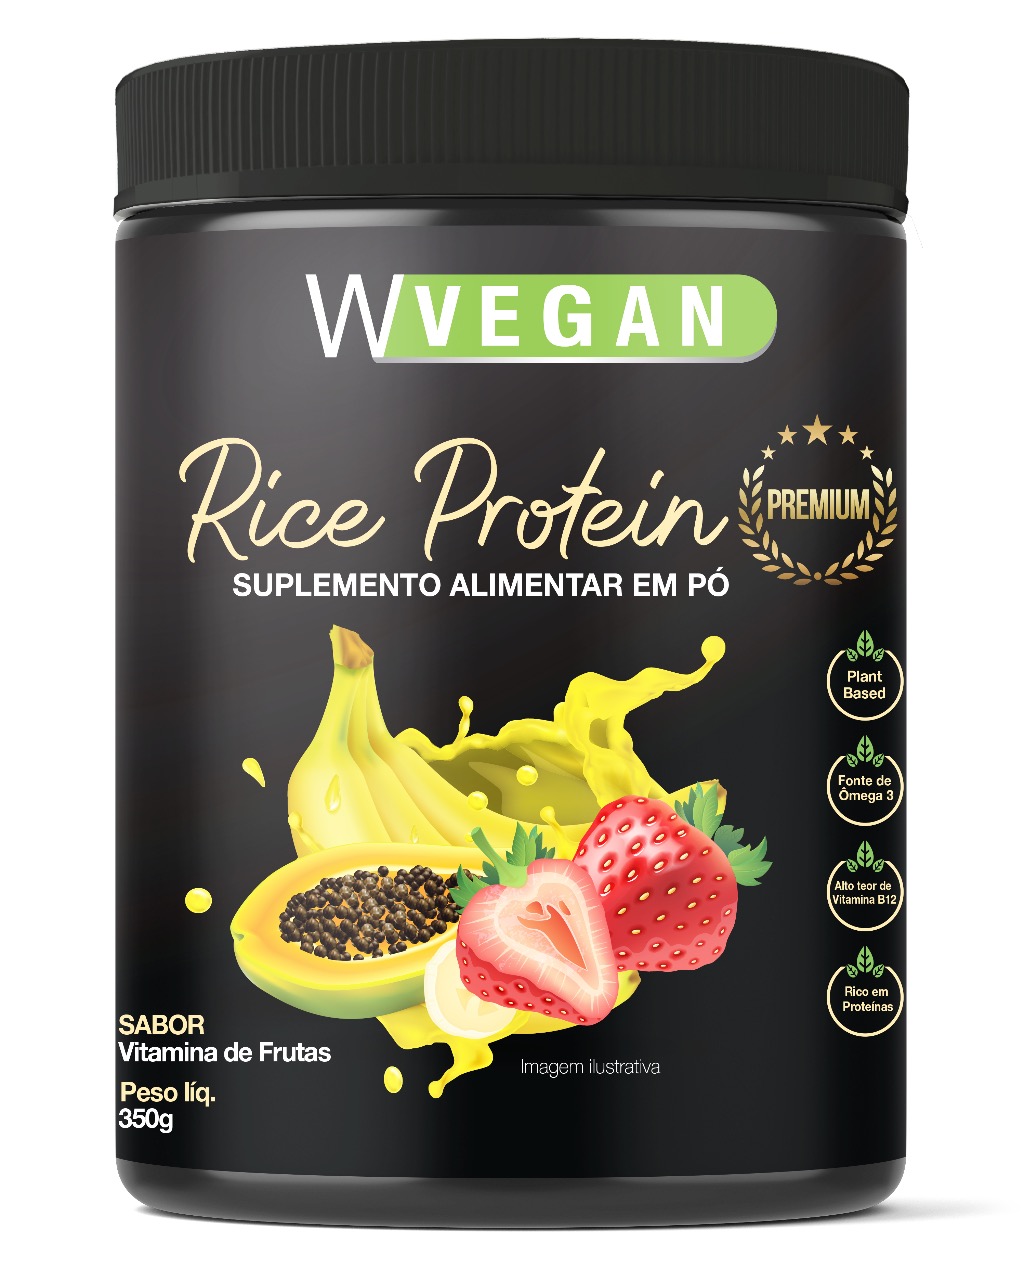 Rice Protein Premium 350g WVegan Sabor Vitamina de Frutas Vegano